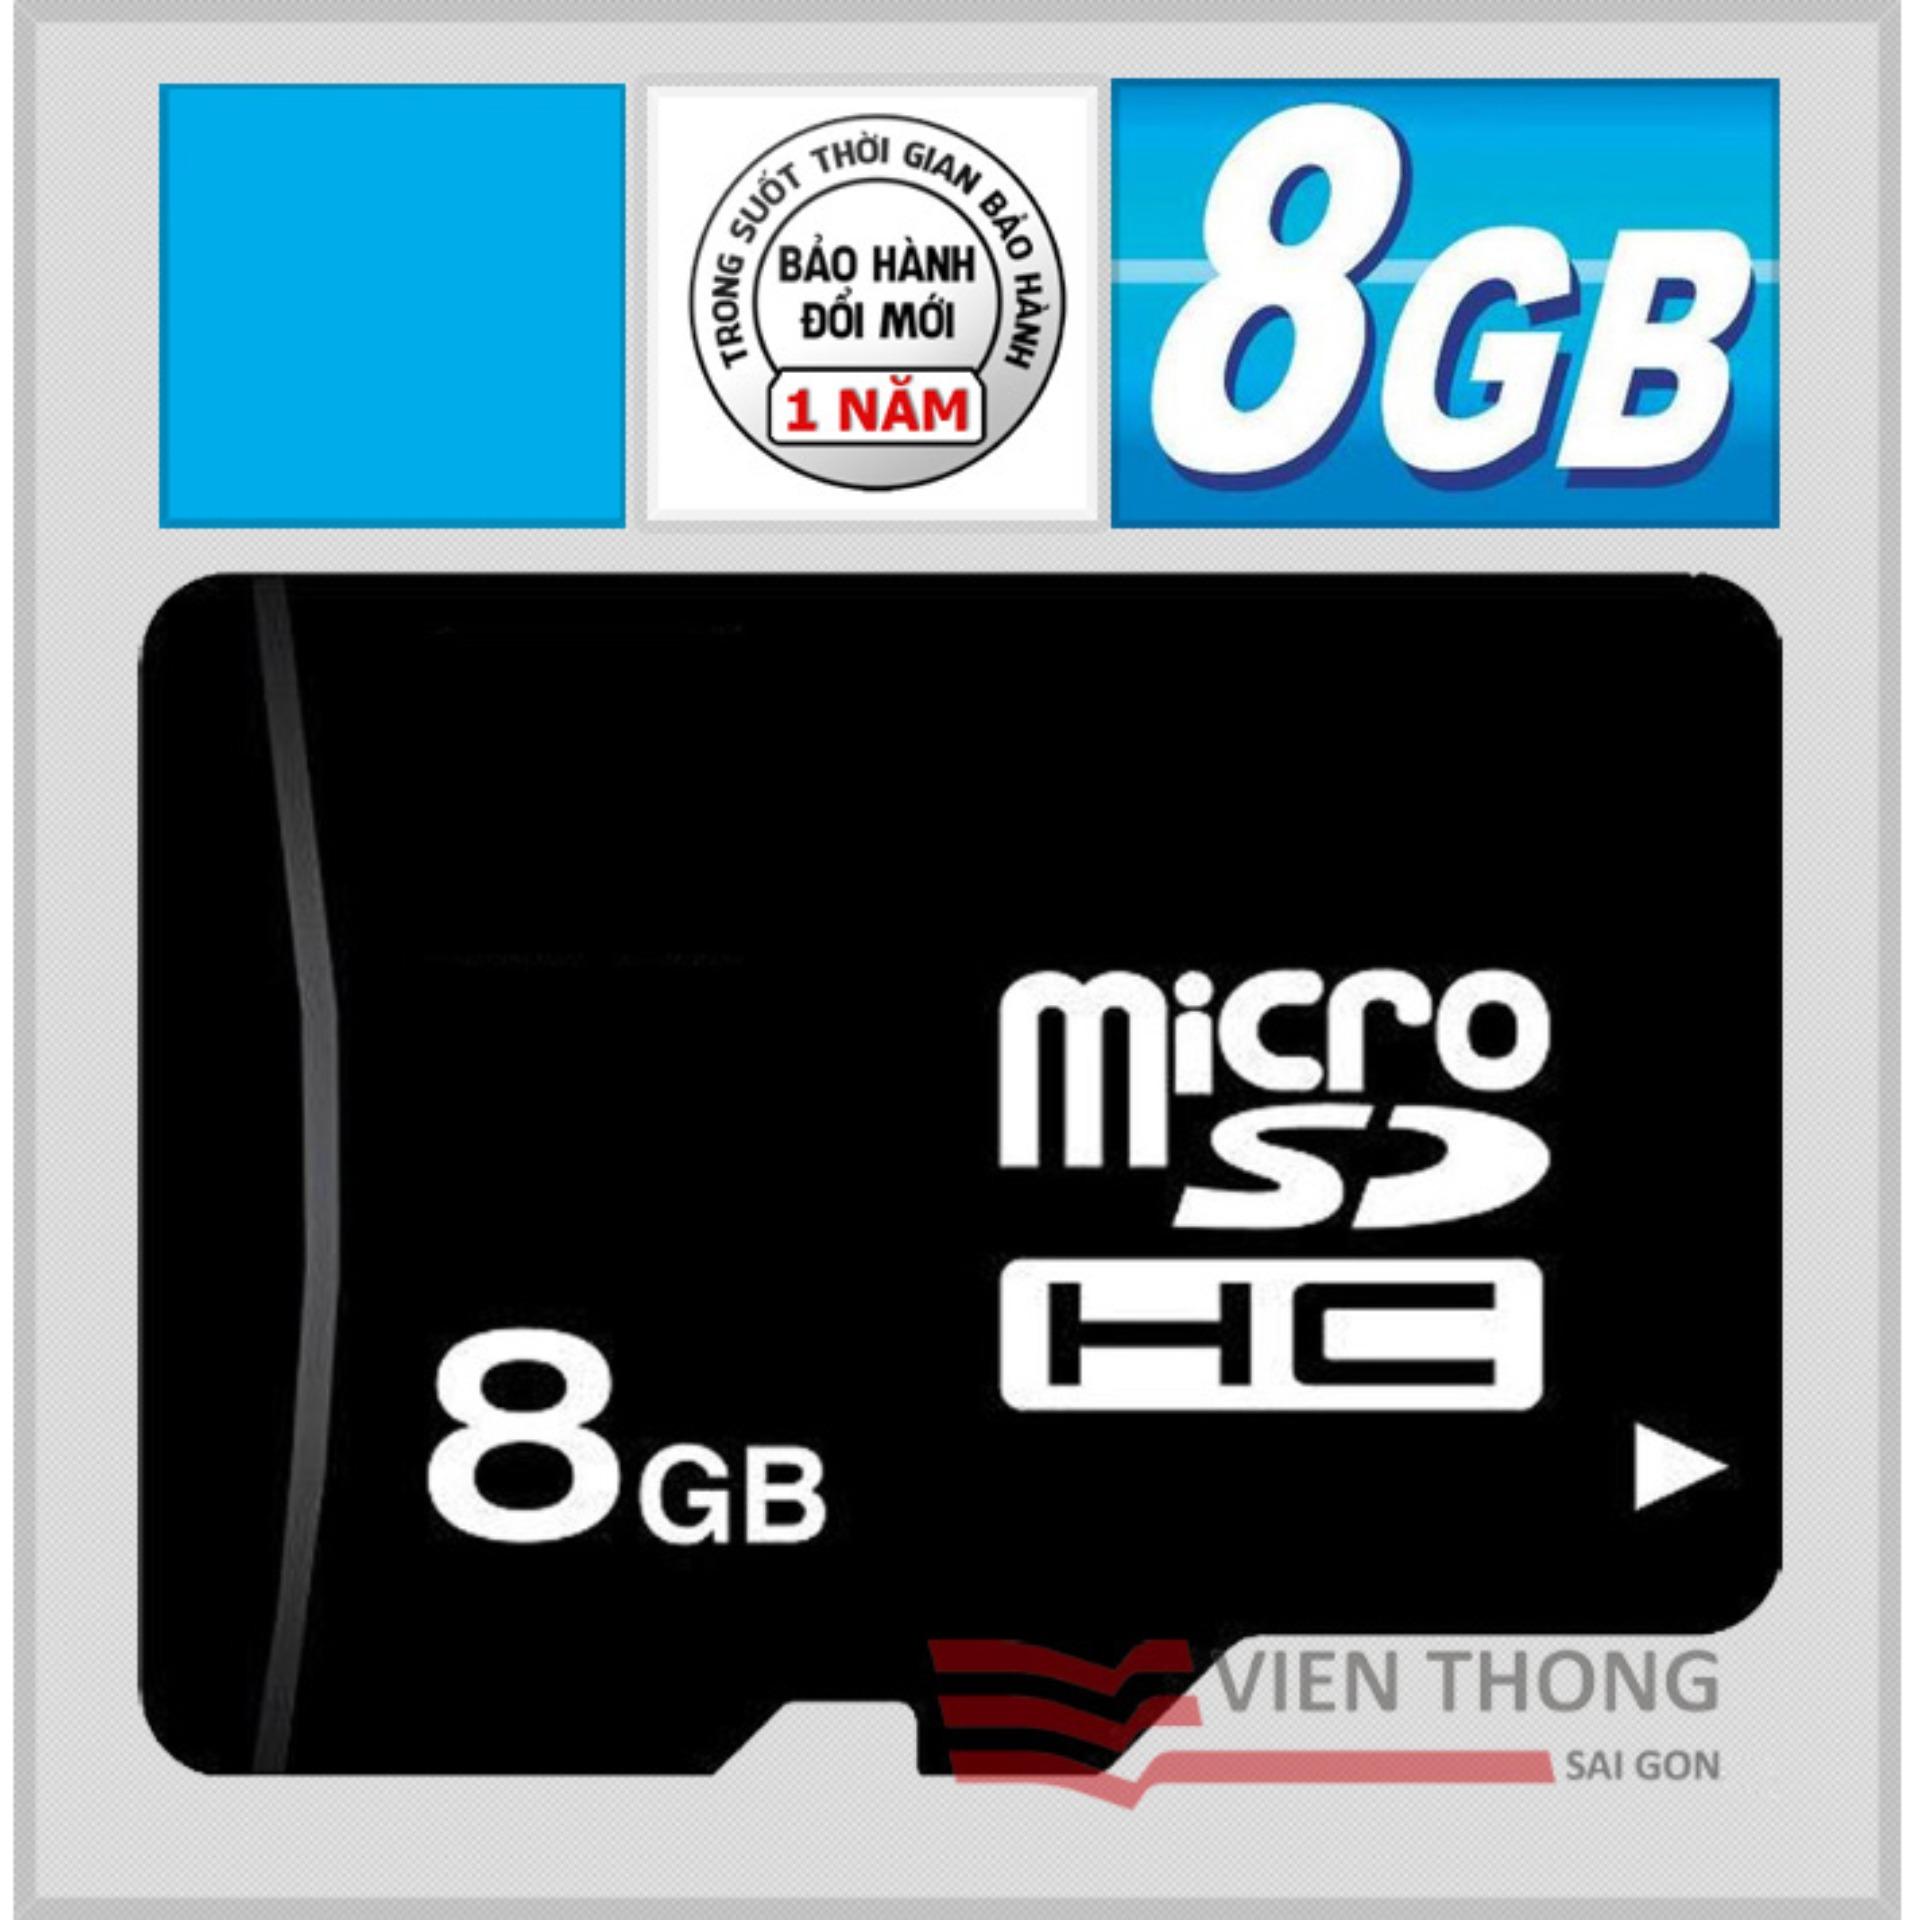 Thẻ nhớ 8GB Micro SDHC (Đen) - Bảo hành 1 năm 1 đổi 1 mới